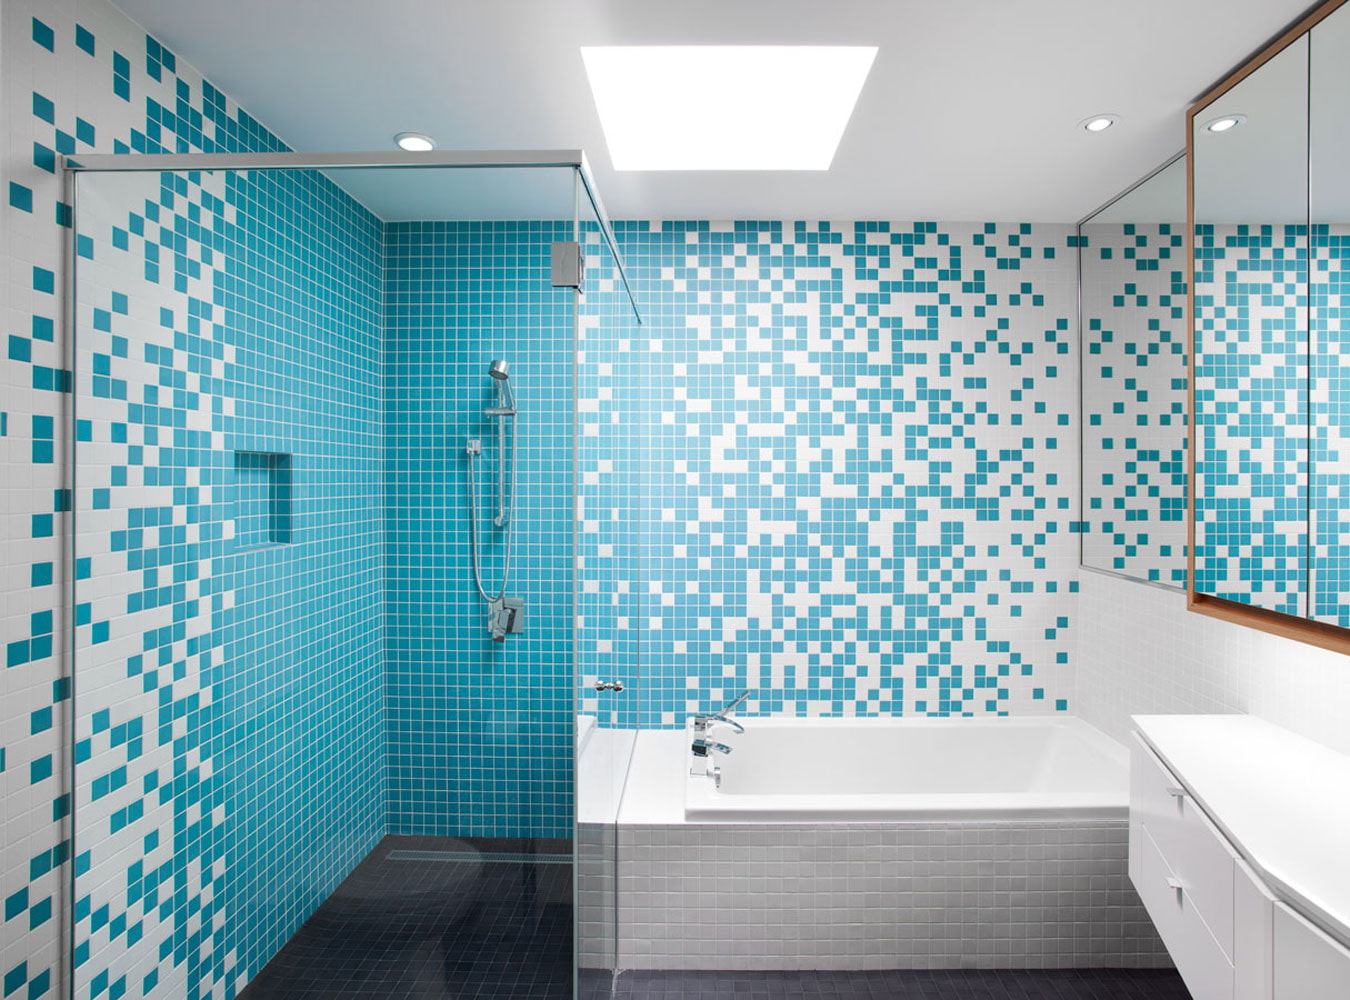 Мозаика в ванной фото дизайн ванной фото